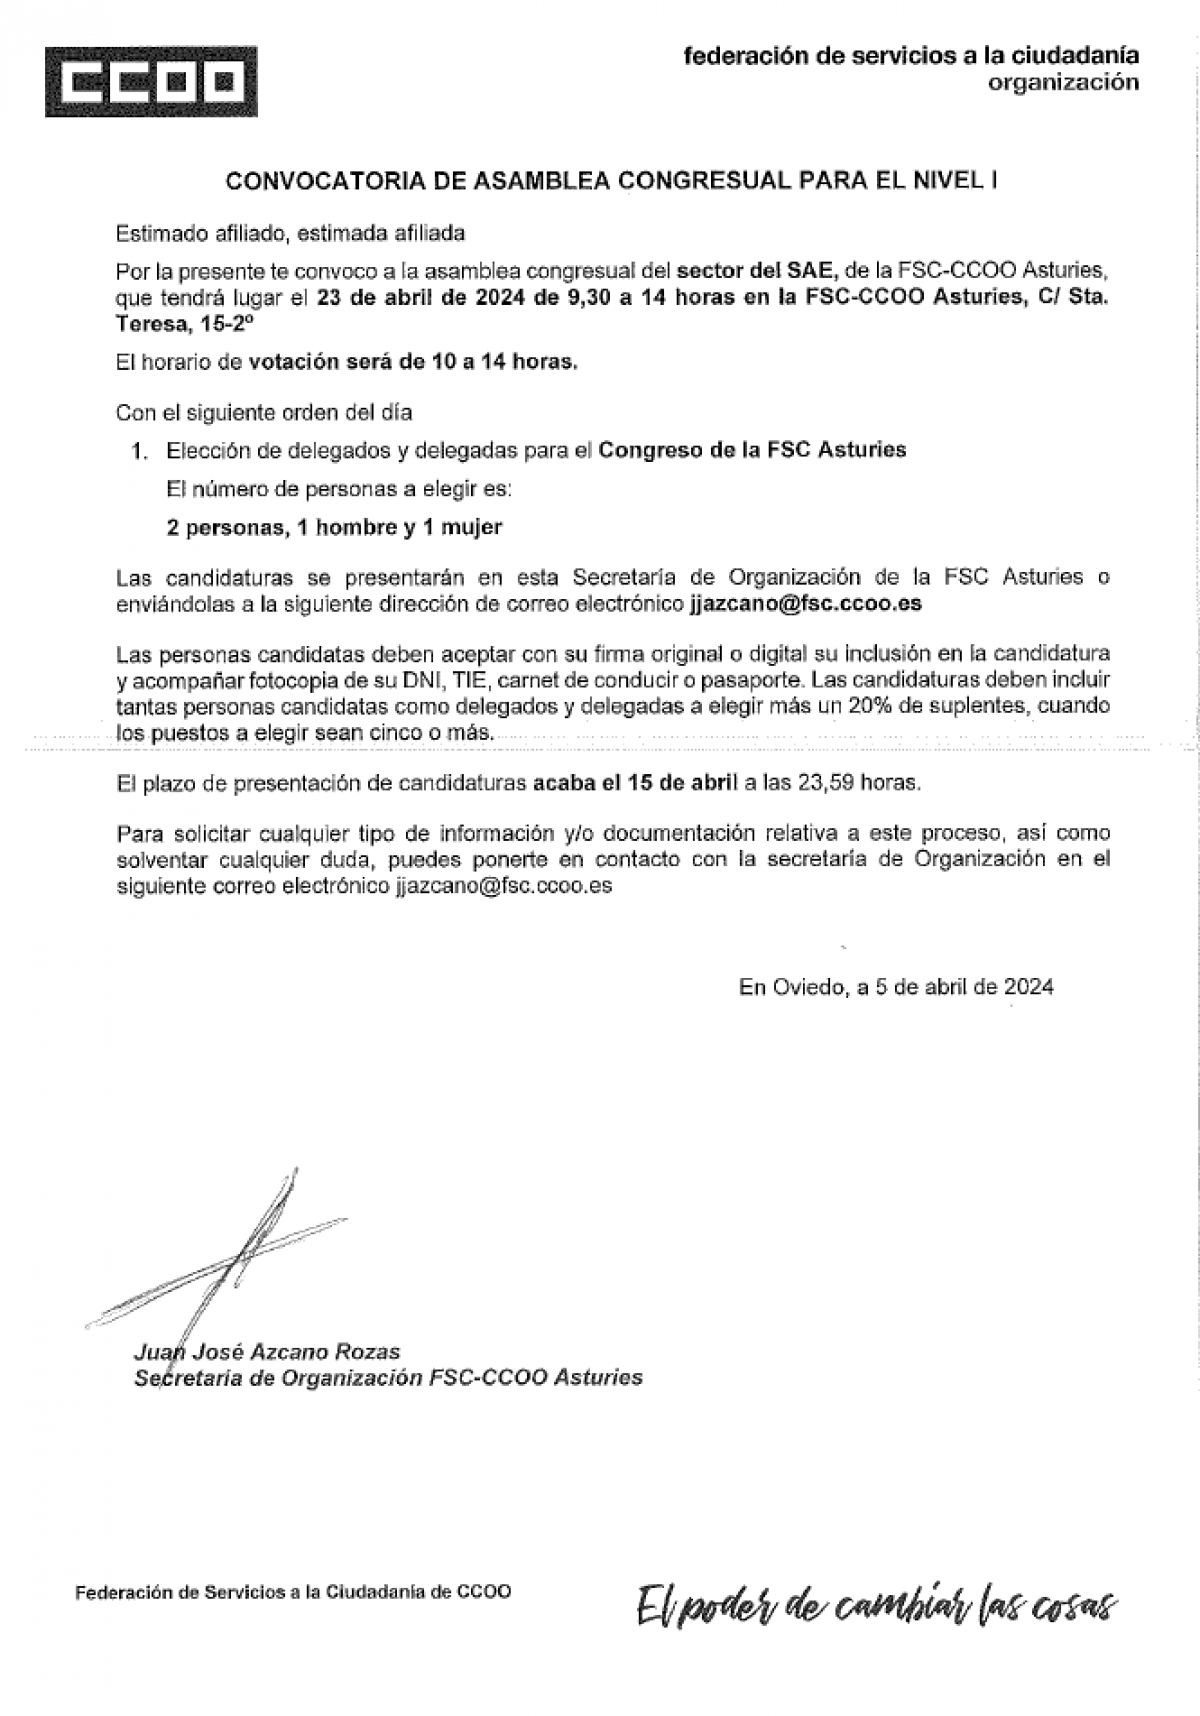 Asamblea Congresual Sector Admn. Estado. Congreso FSC Asturias